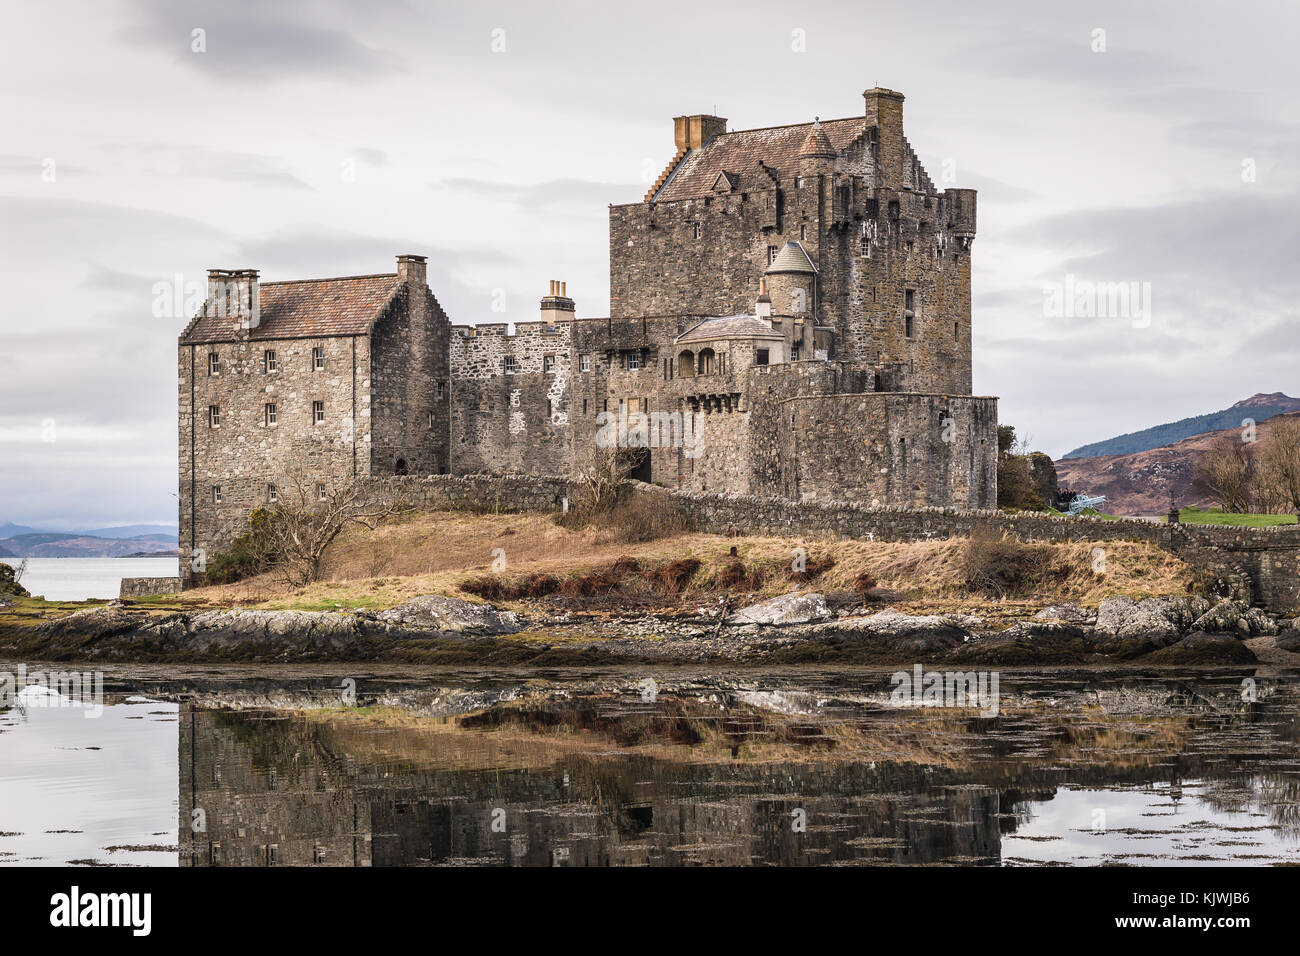 Eilan donan castle castillo fortificado construido a mediados del siglo XIII, situada en las tierras altas de Escocia. Foto de stock